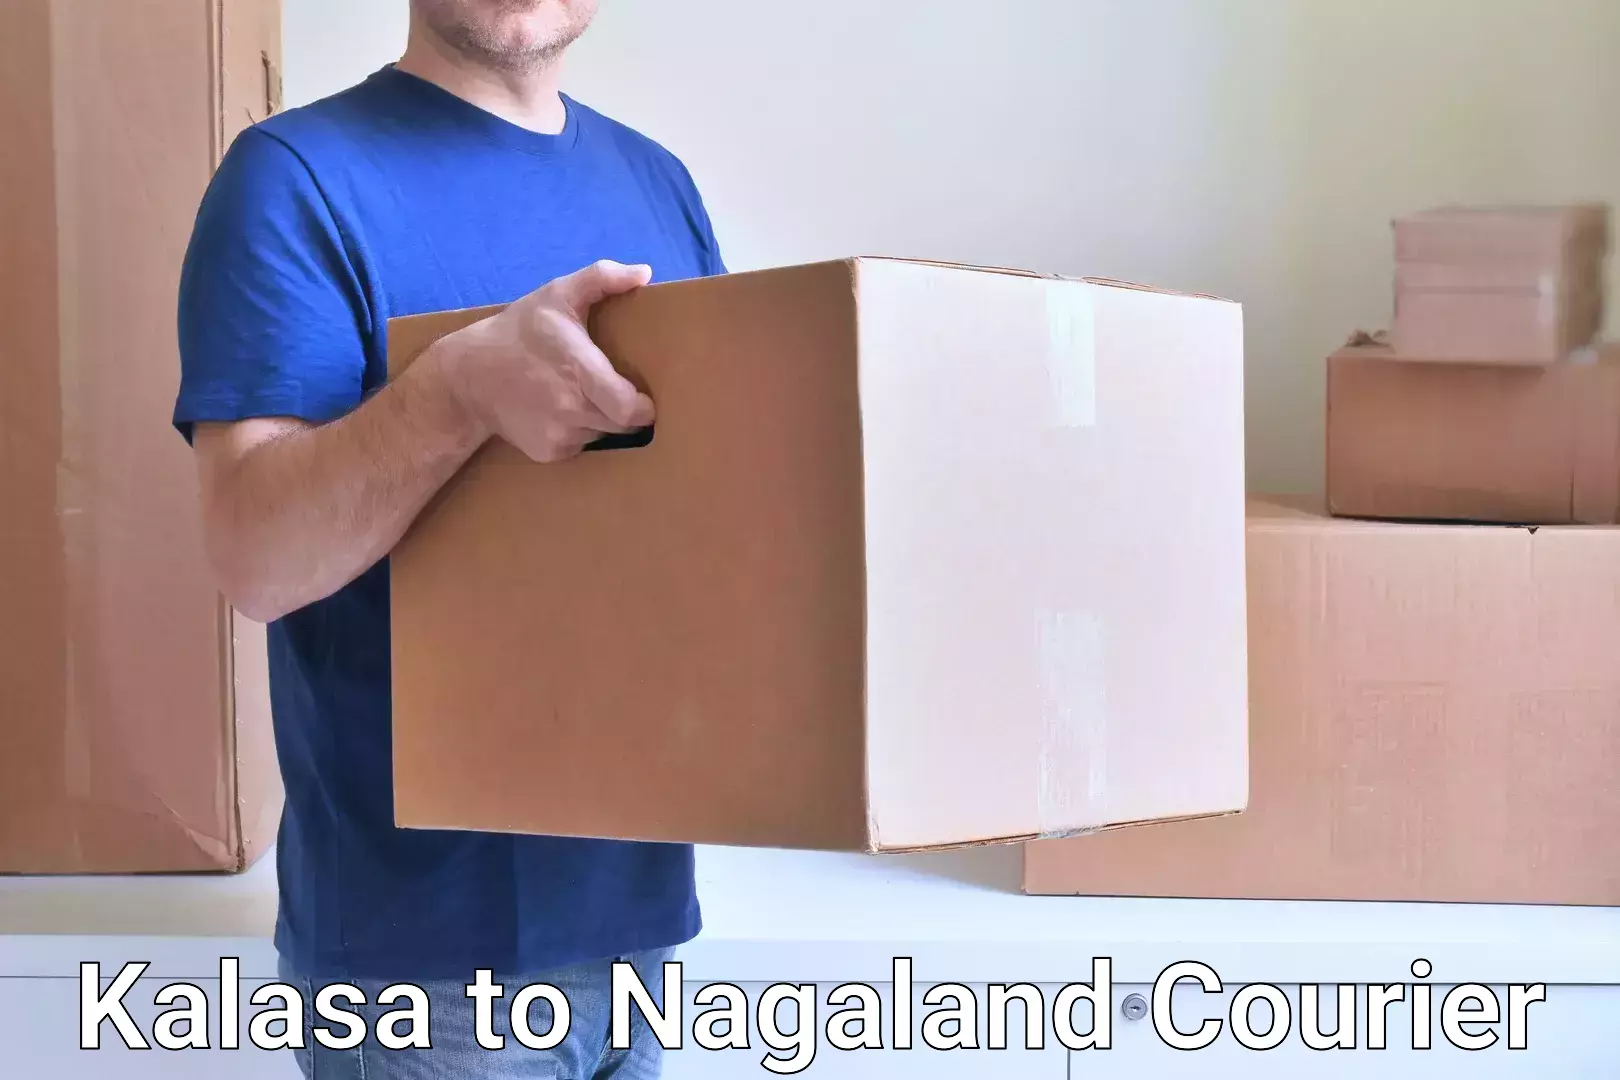 Express package services Kalasa to NIT Nagaland